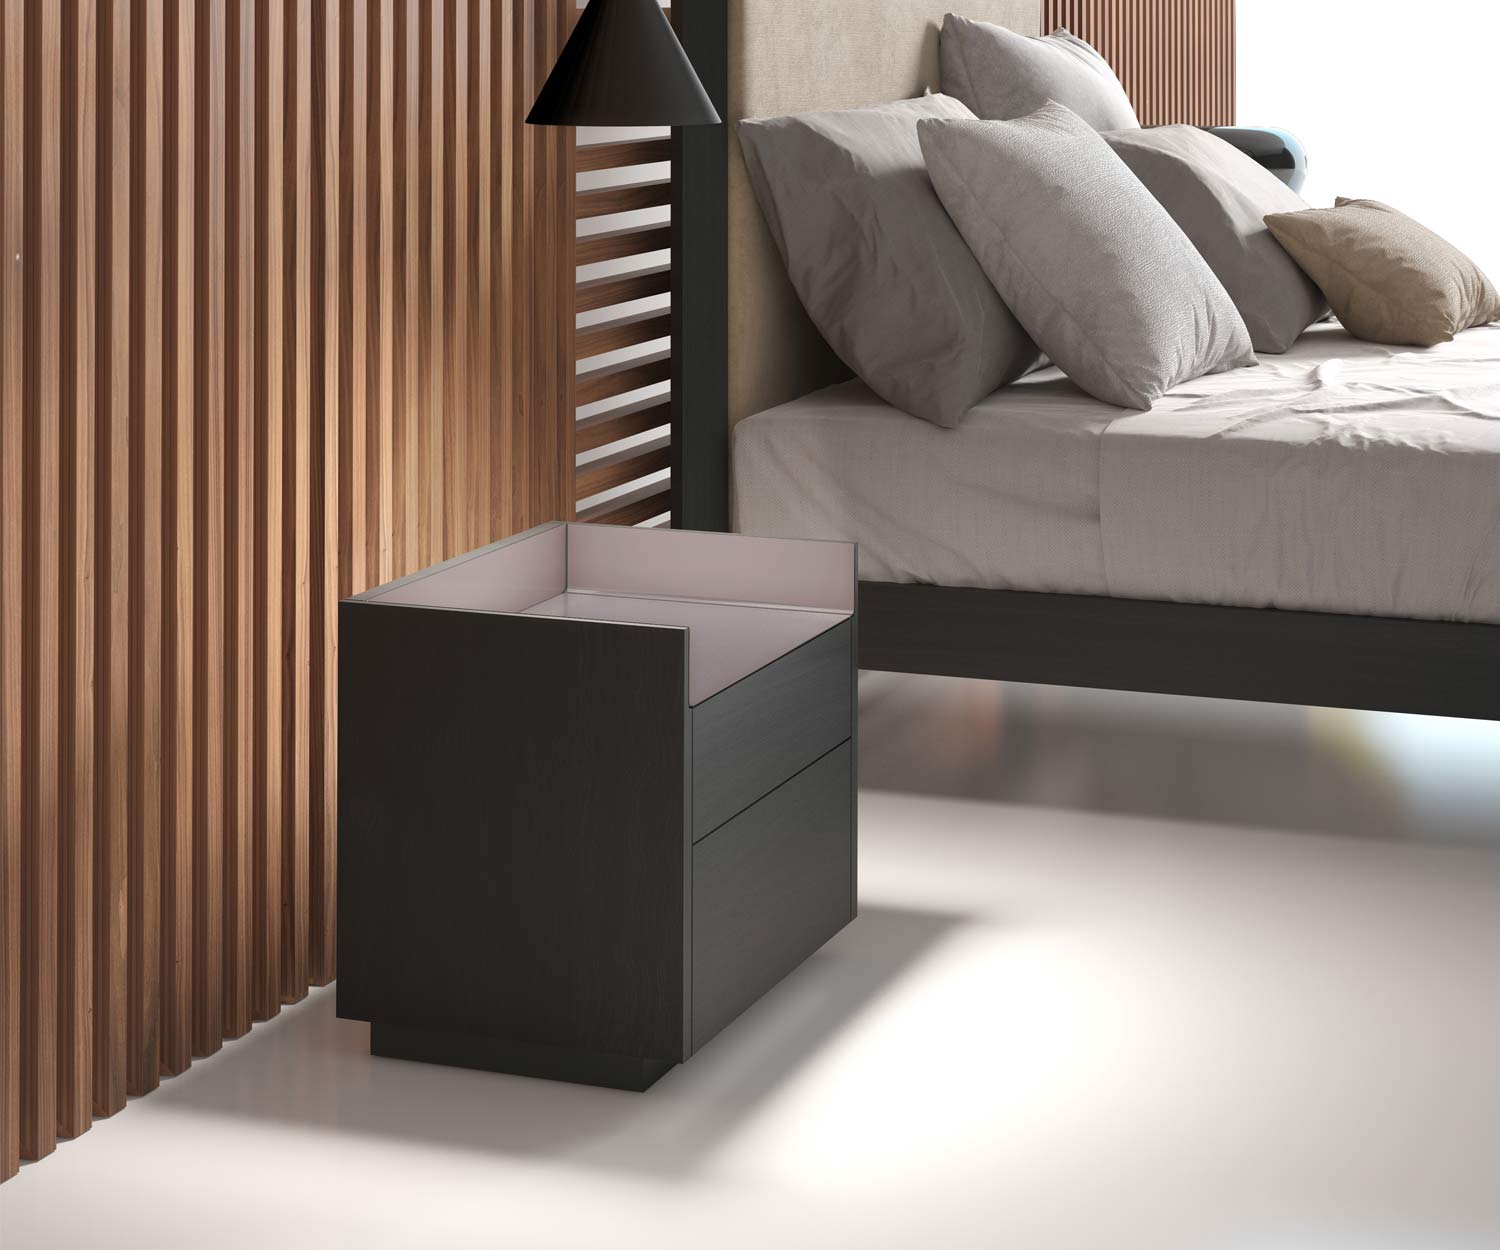 Hochwertiger Design Nachttisch im Schlafzimmer mit zwei Schubladen dunkel